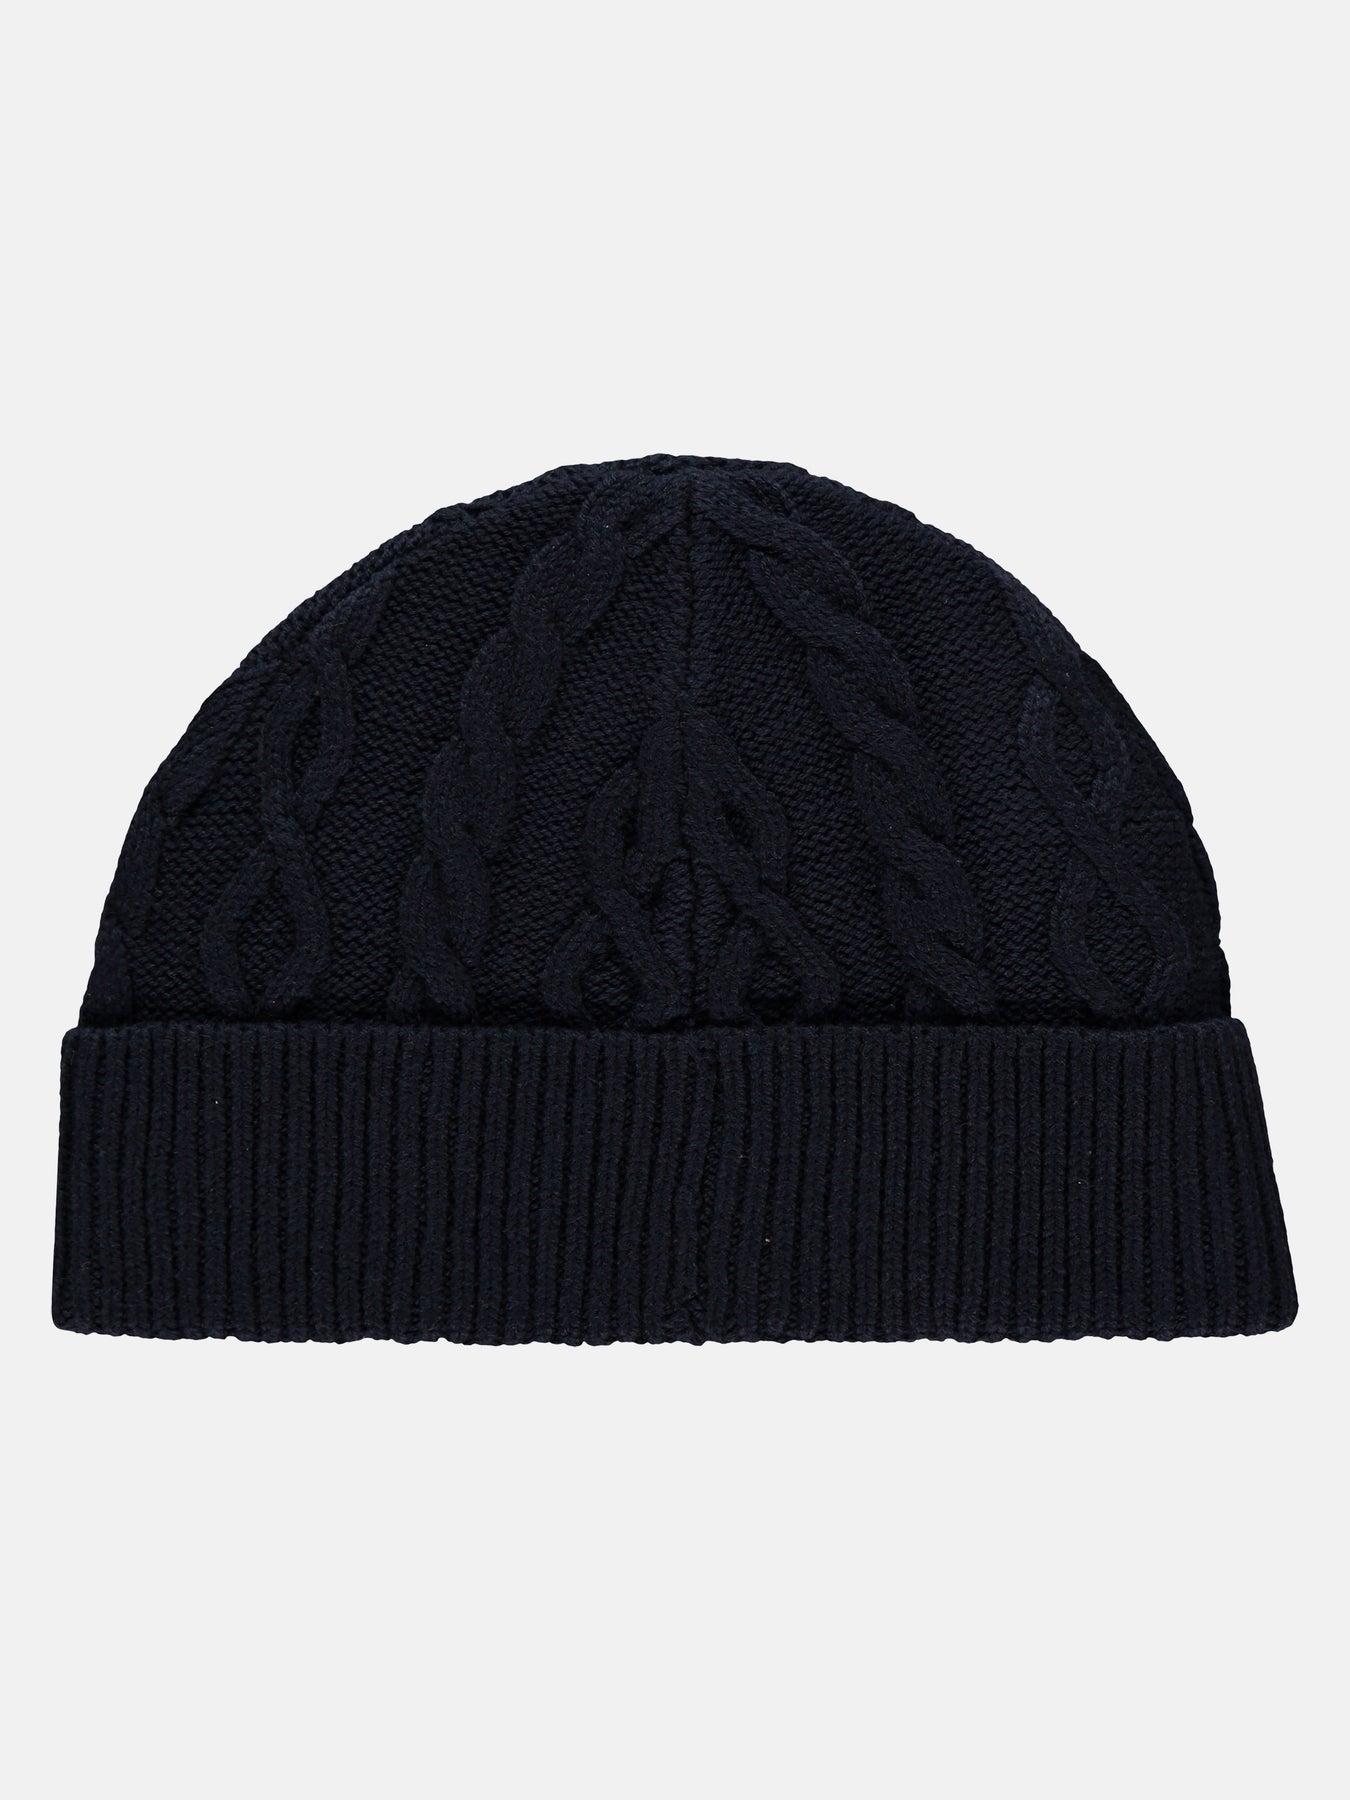 – knit LERROS Cable SHOP hat